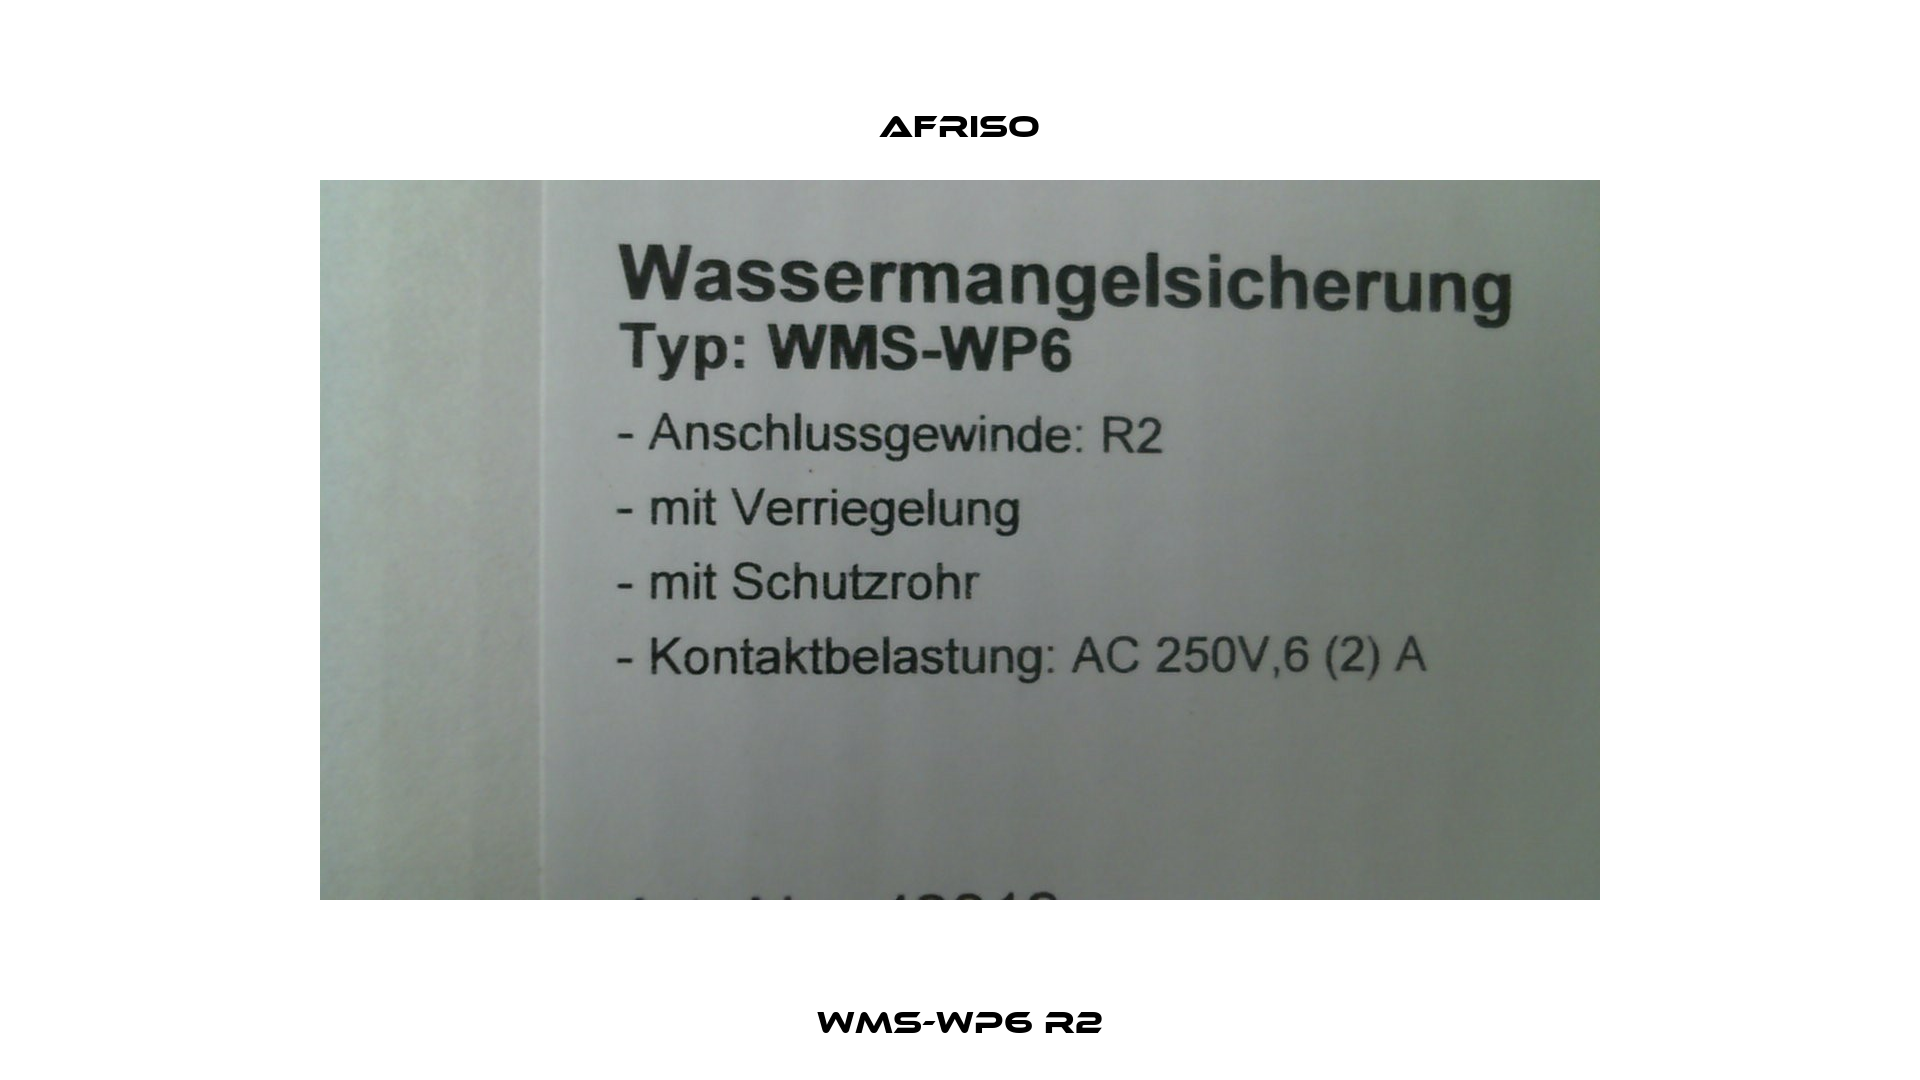 WMS-WP6 R2 Afriso